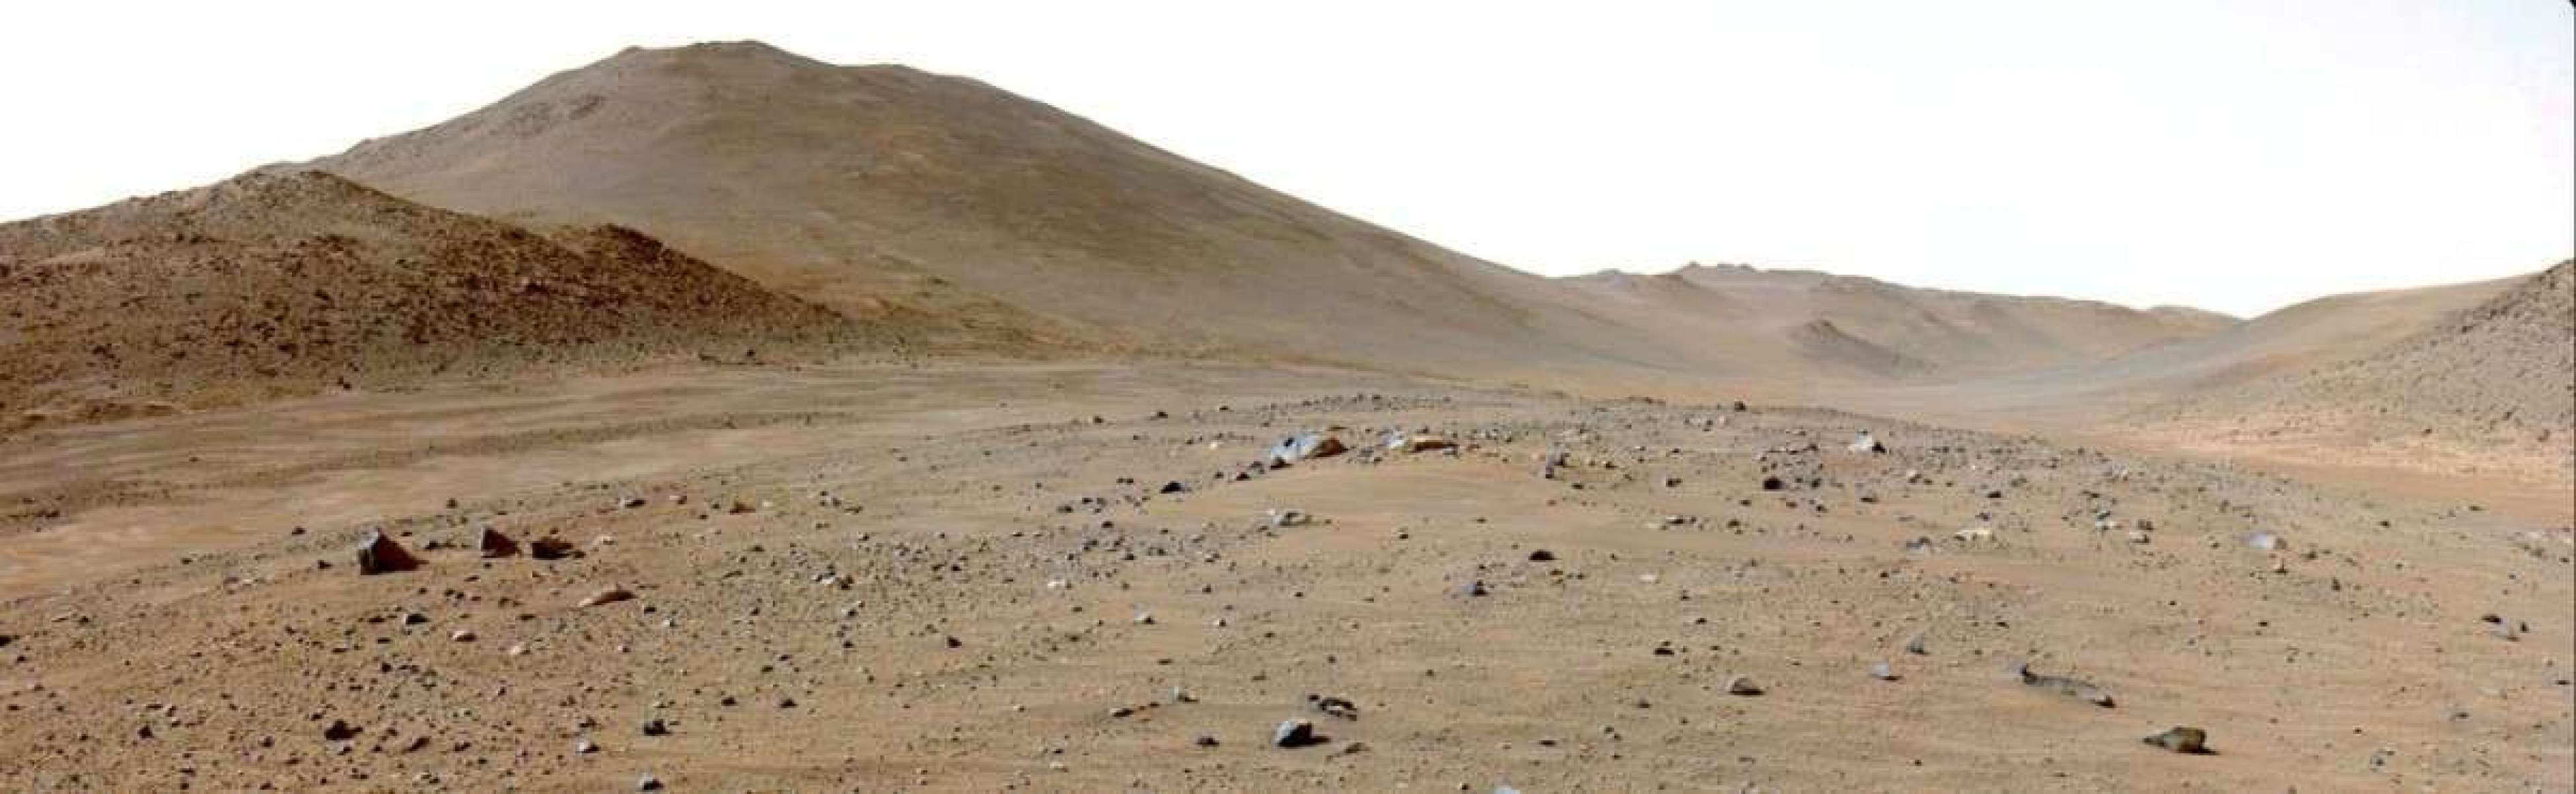 Enigma em Marte: rocha misteriosa intriga cientistas da Nasa